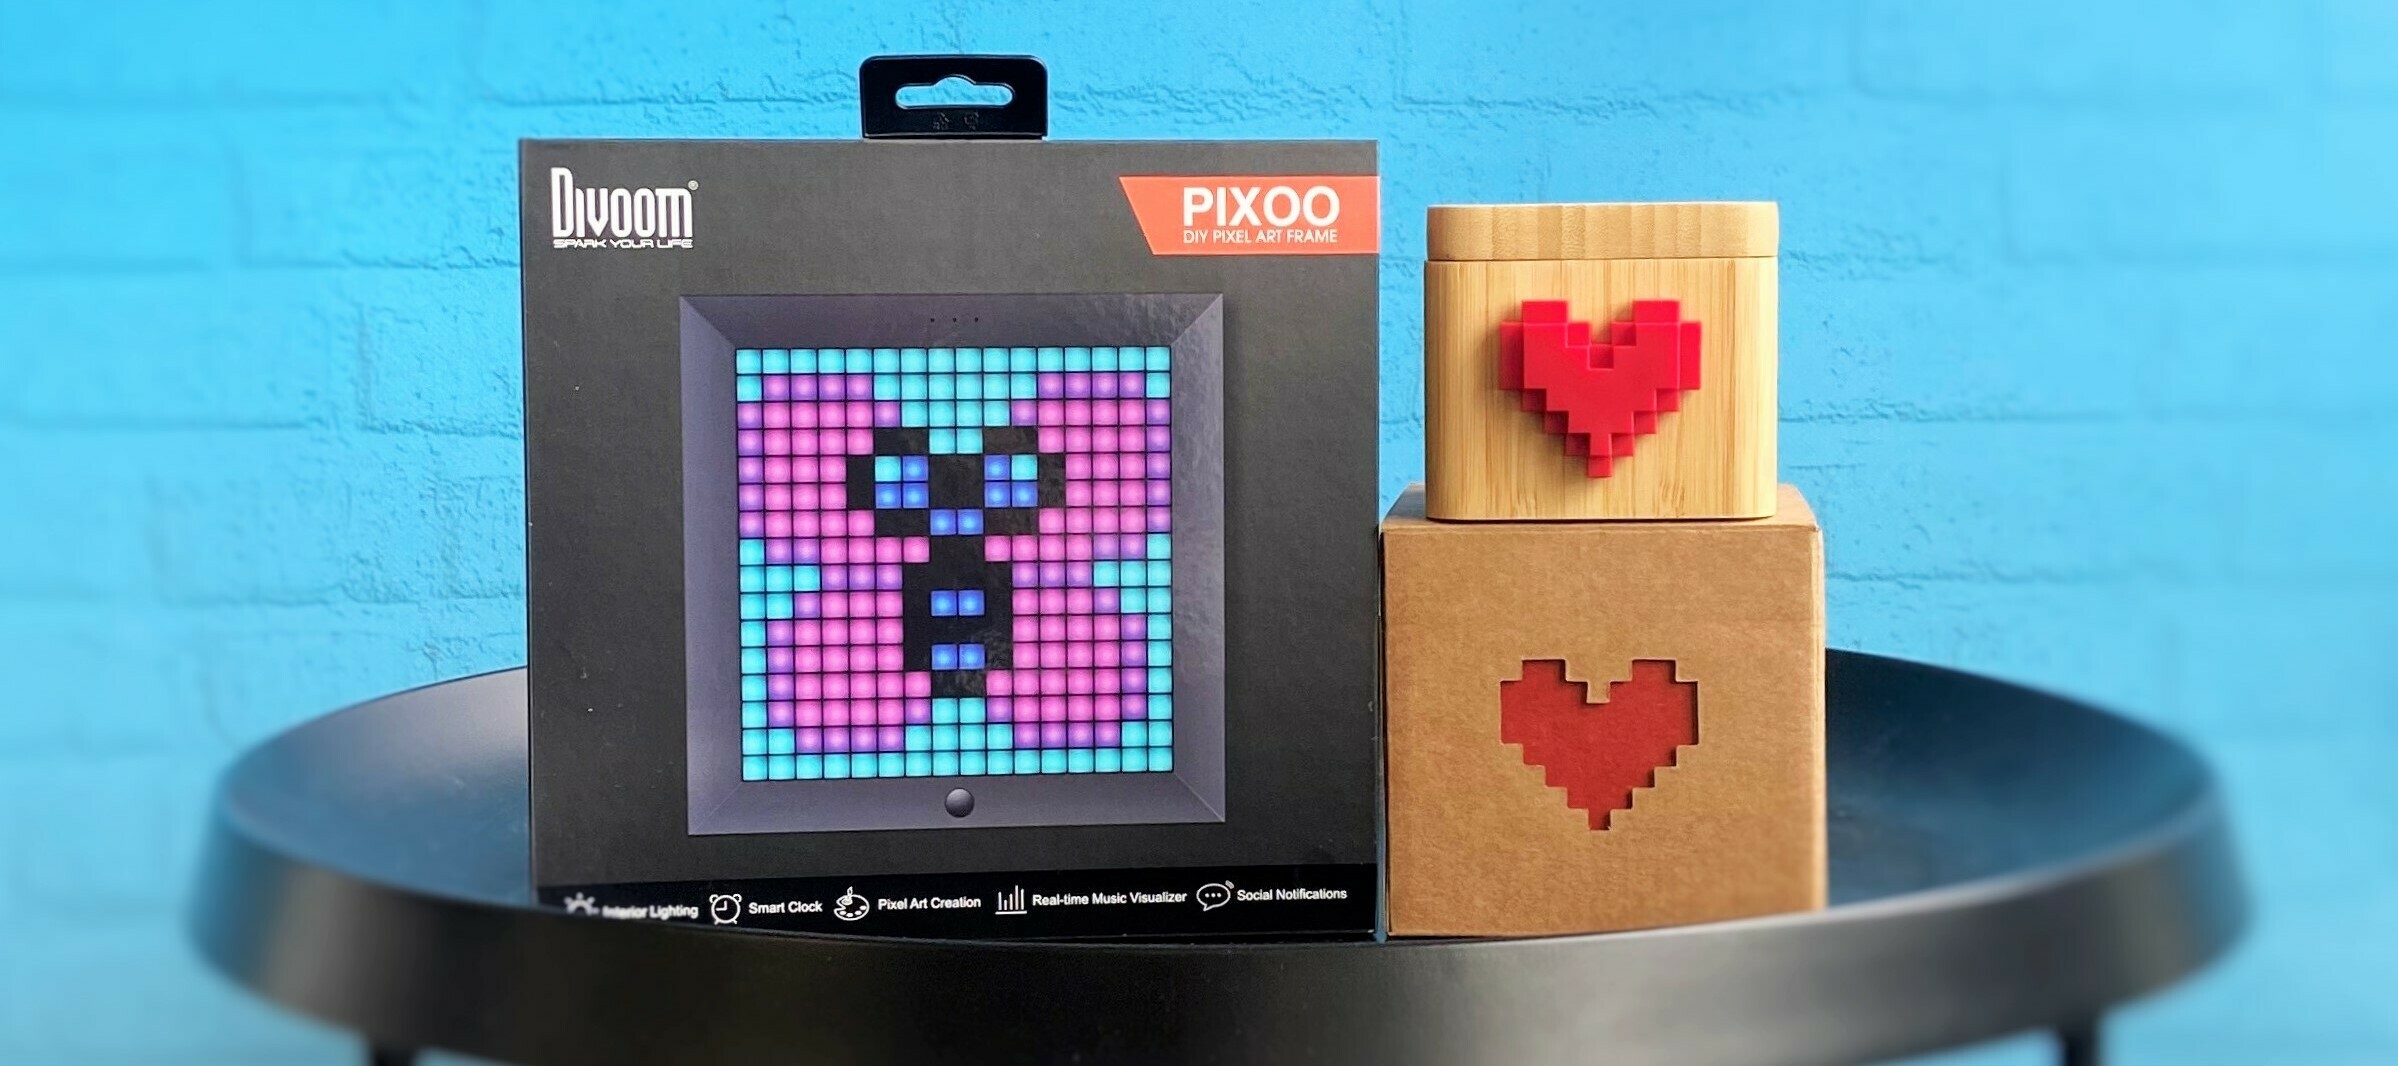 Divoom Pixoo & Lovebox - ein Bundle für kreative Tester:innen.